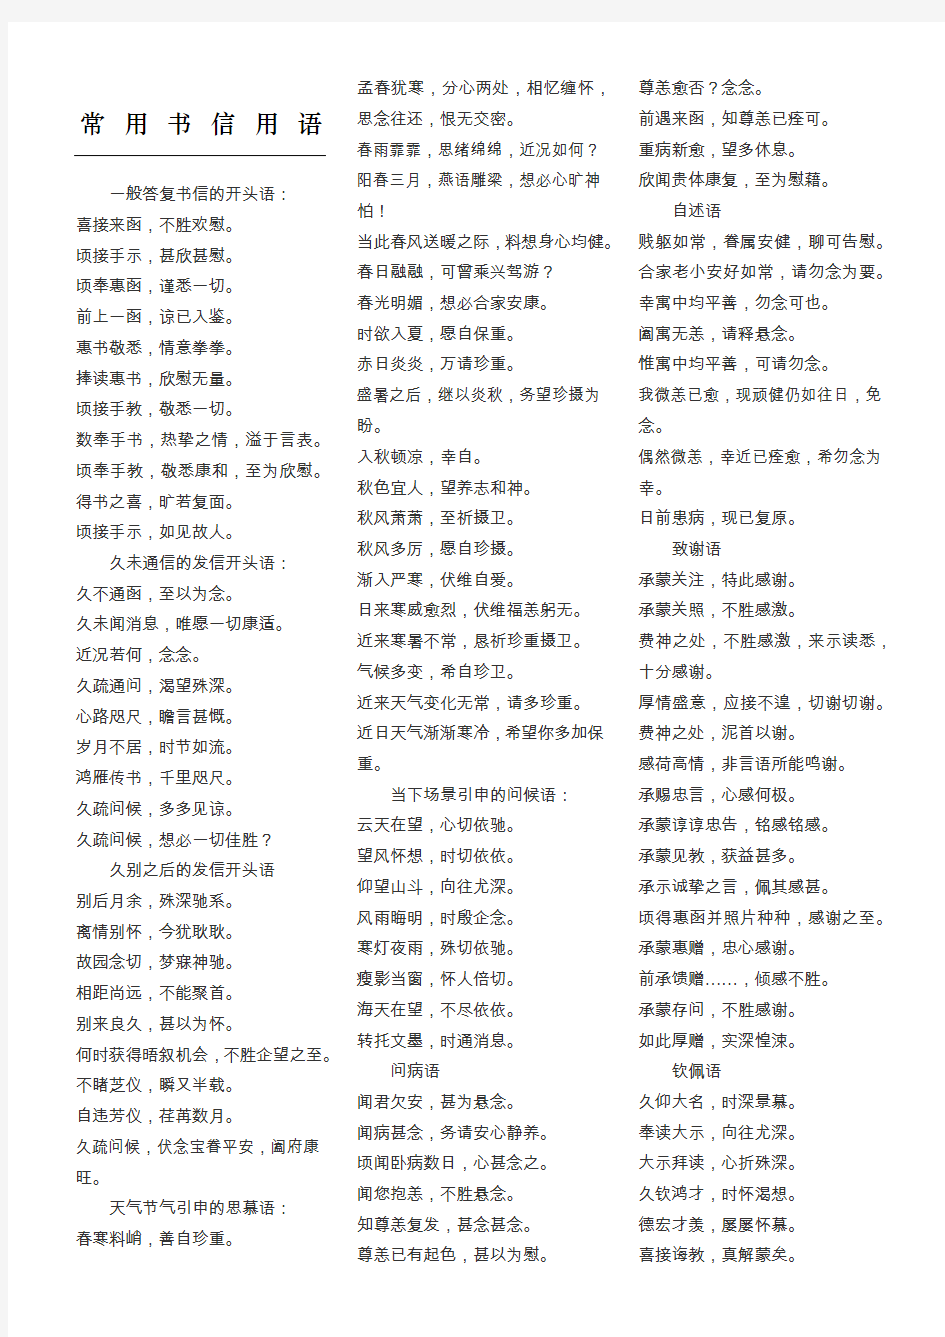 常用手册信用语 汉语